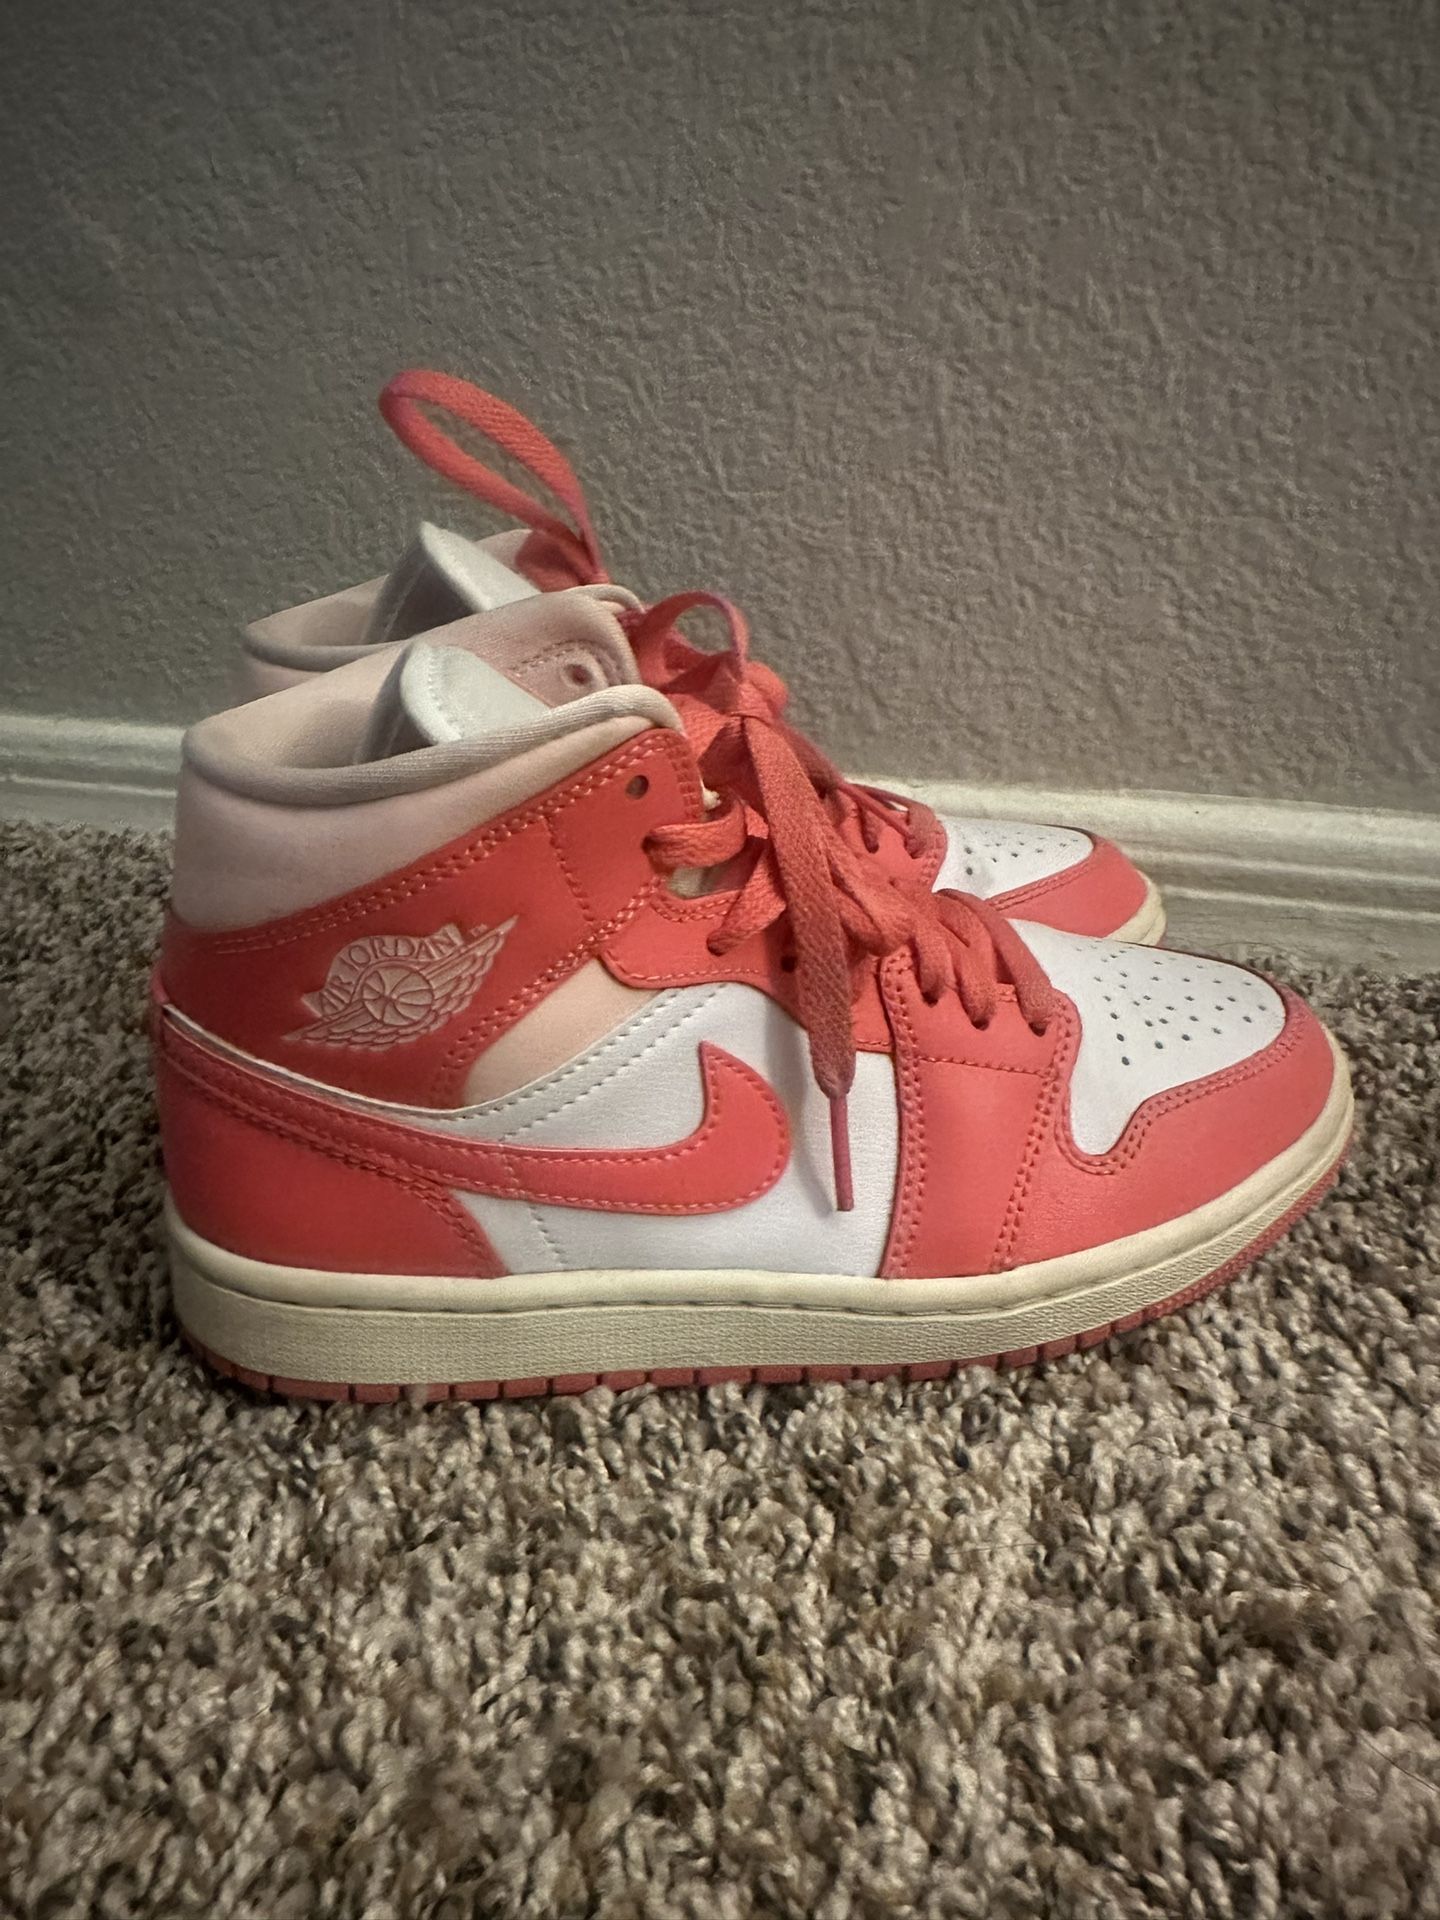 Pink Women’s Nike Air Jordan 1 Strawberries